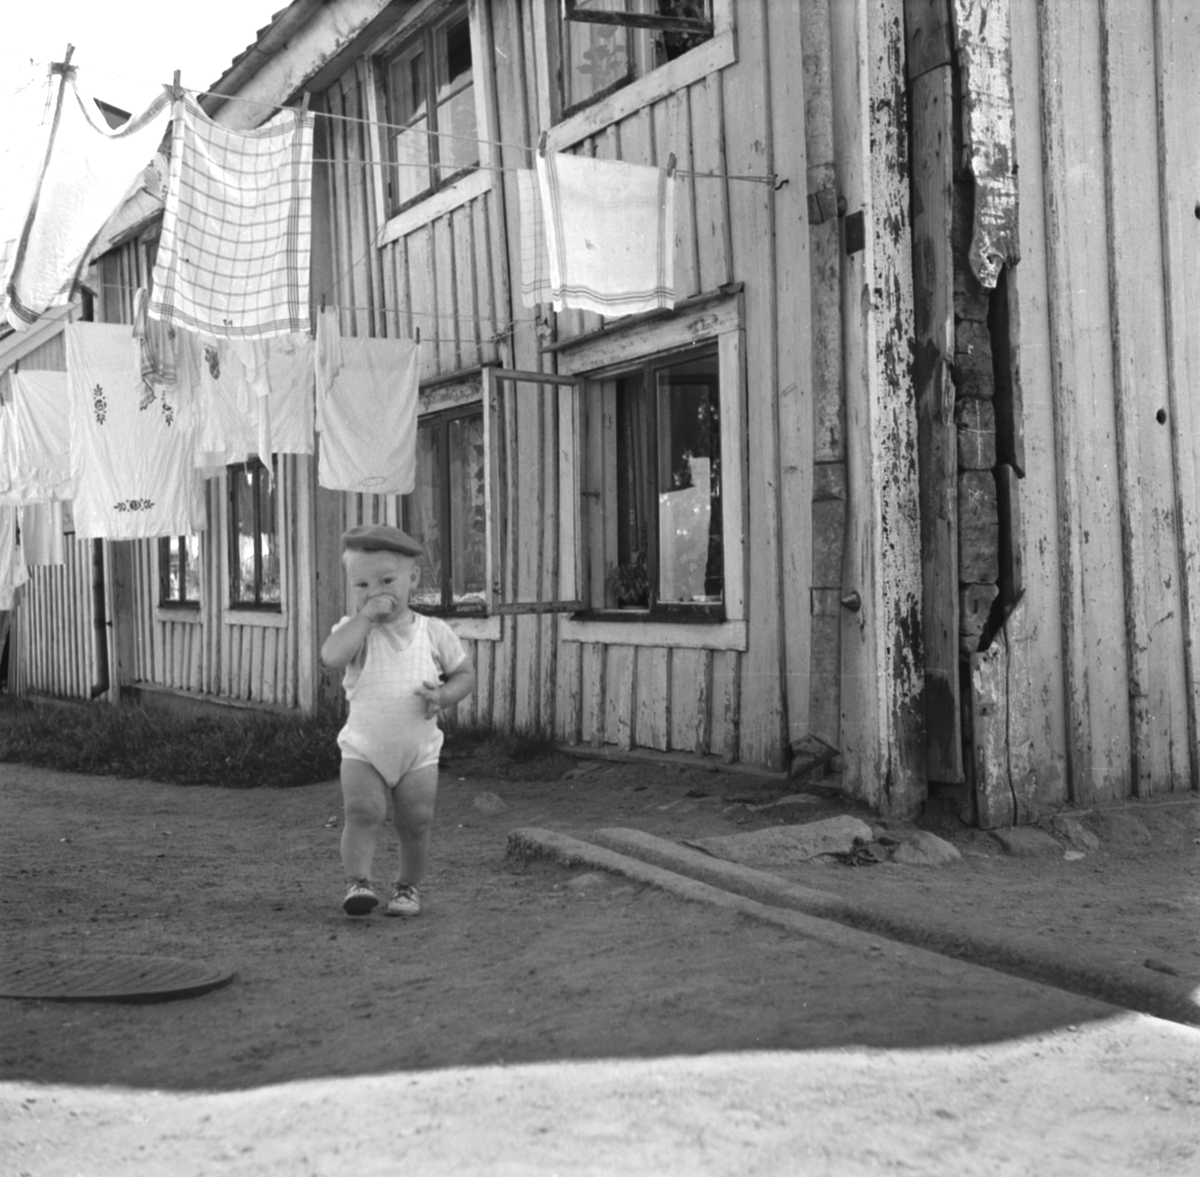 En gosse tultar fram bland tvätt på tork. Tvättstreck var förr en vanlig syn på stadens gårdar och utgjorde en uppskattad lekplats för lekande barn. Kvinnorna som svarat för tvätten delade oftast inte deras glädje. Pojken på bilden ska dock inte lastas, i alla fall inte i stunden. Foto från omkring 1950.